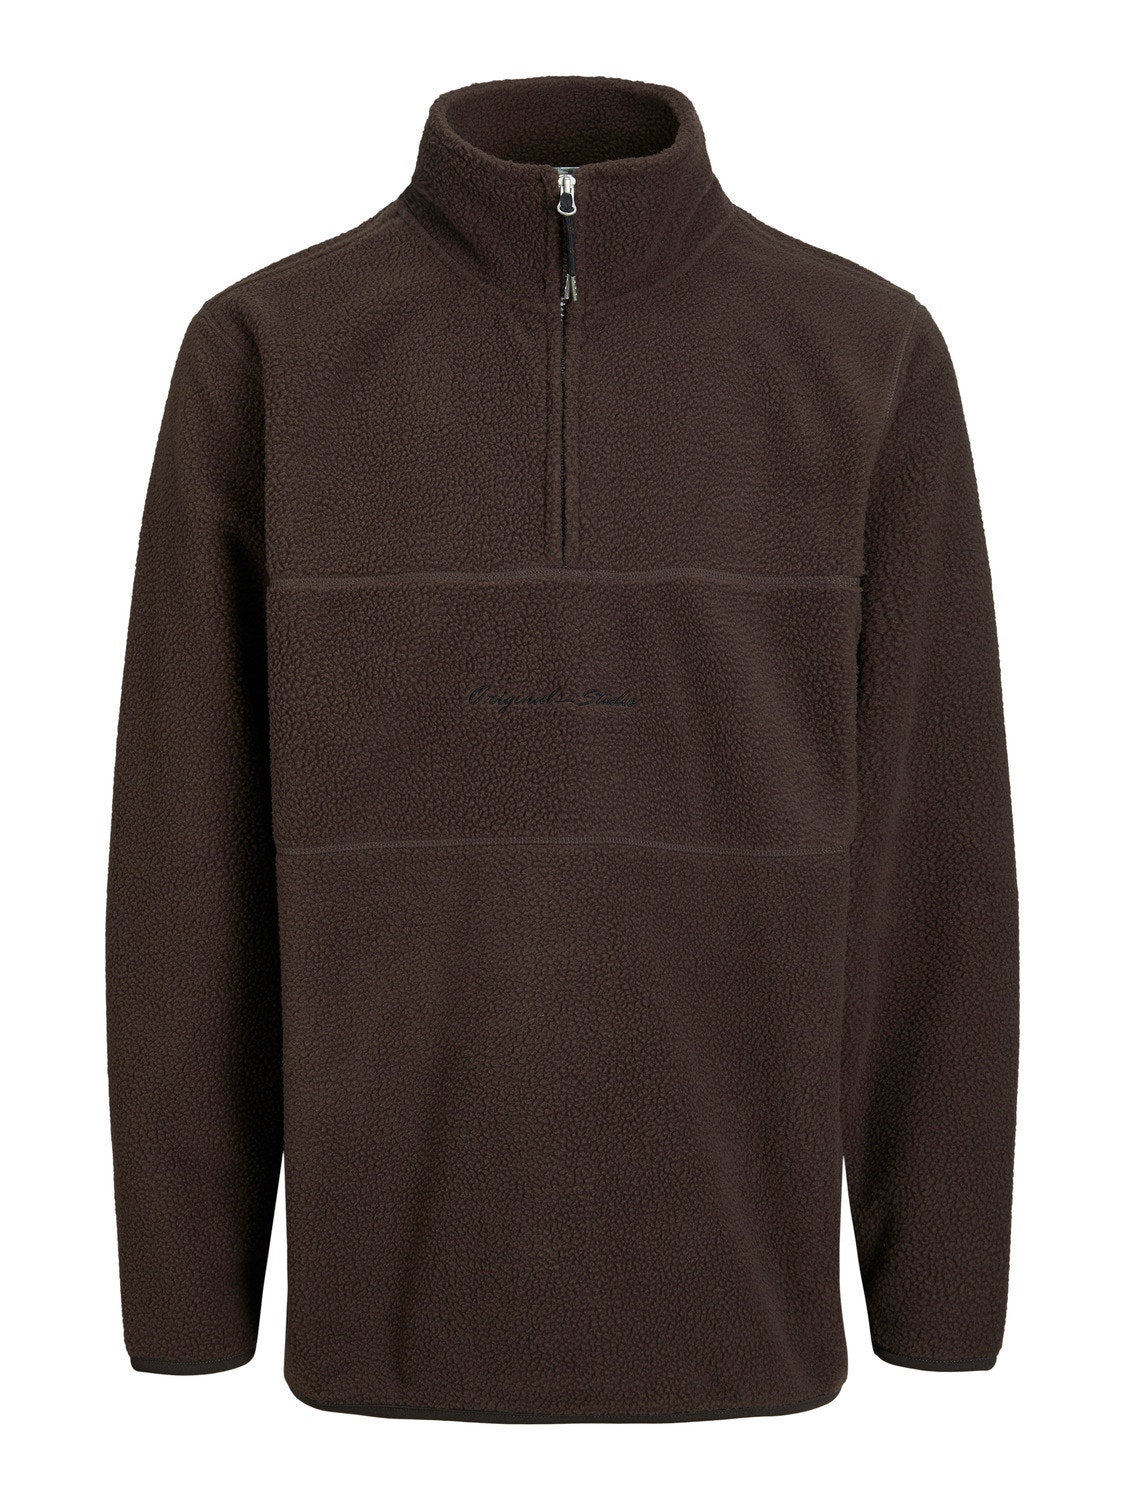 Jack & Jones Plus Size Crew neck Sweatshirt -Chocolate Brown - 12251903